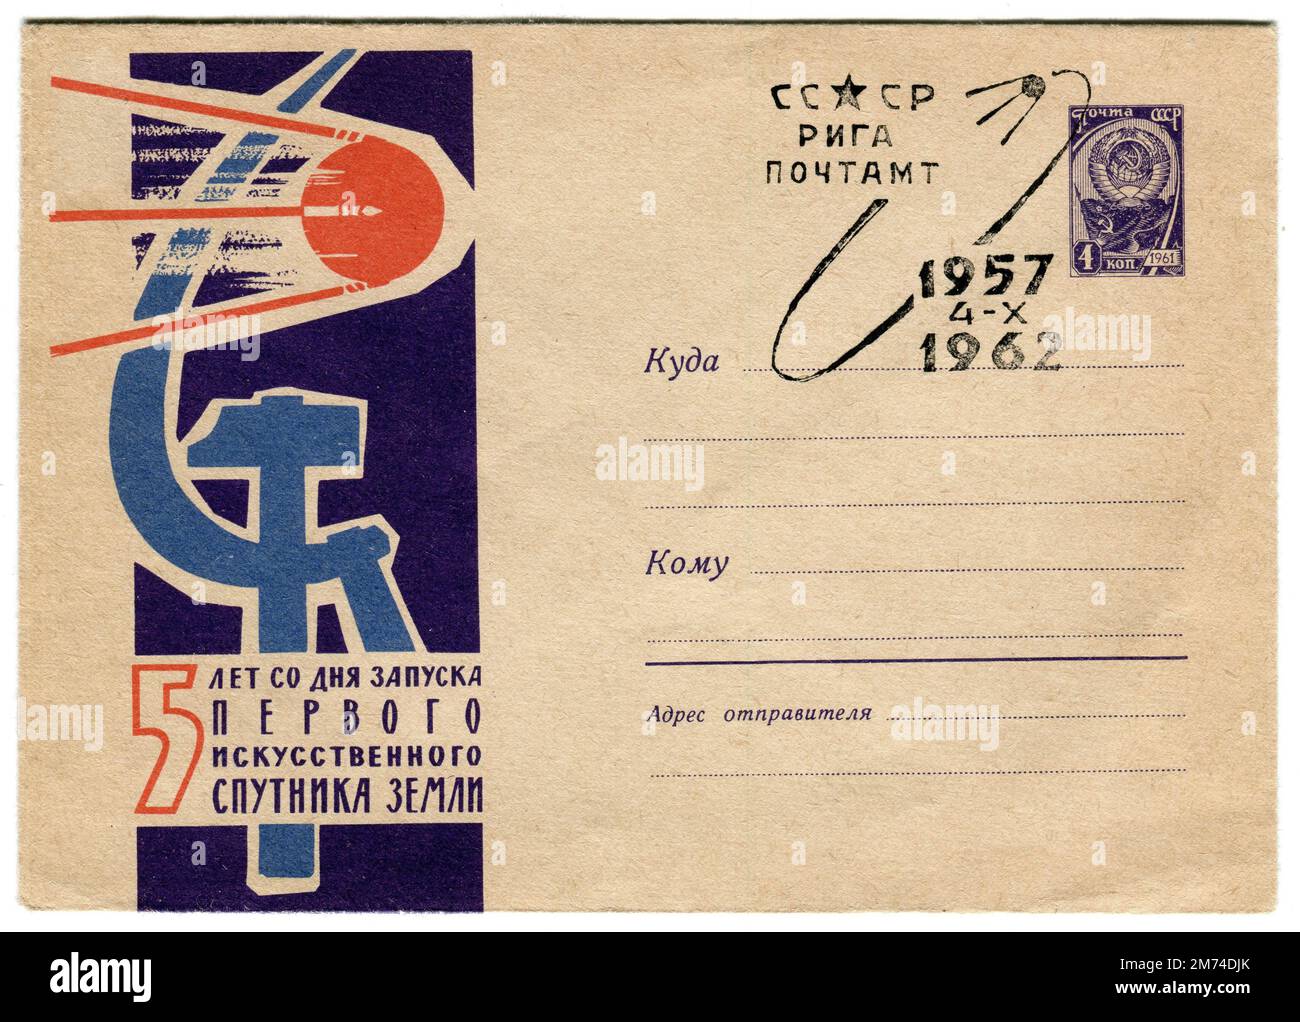 Une couverture spatiale russe soviétique d’époque, publiée le 4 octobre 1962, commémorant le 5th anniversaire du lancement du satellite ‘putnik’. Spoutnik 1 a été le premier satellite artificiel de la Terre qui a été lancé par l'Union soviétique dans une orbite terrestre basse elliptique le 4 octobre 1957 dans le cadre du programme spatial soviétique. Il a renvoyé un signal radio à la Terre pendant trois semaines jusqu'à ce que la traînée aérodynamique l'ait fait retomber dans l'atmosphère le 4 janvier 1958. Banque D'Images